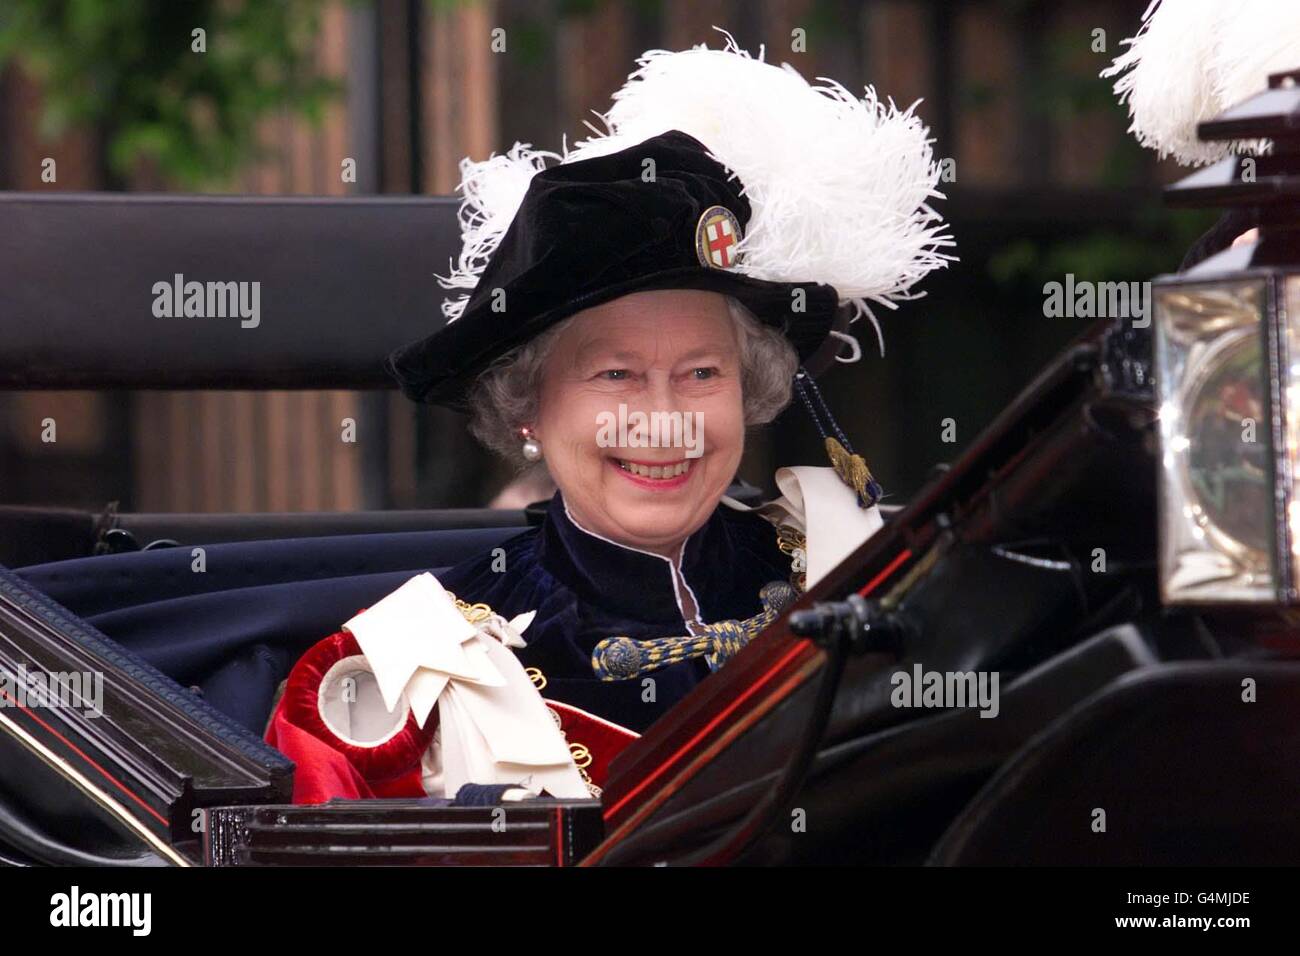 Queen Elizabeth/Garter Ceremony. Queen Elizabeth at the Garter Ceremony in Windsor. Stock Photo